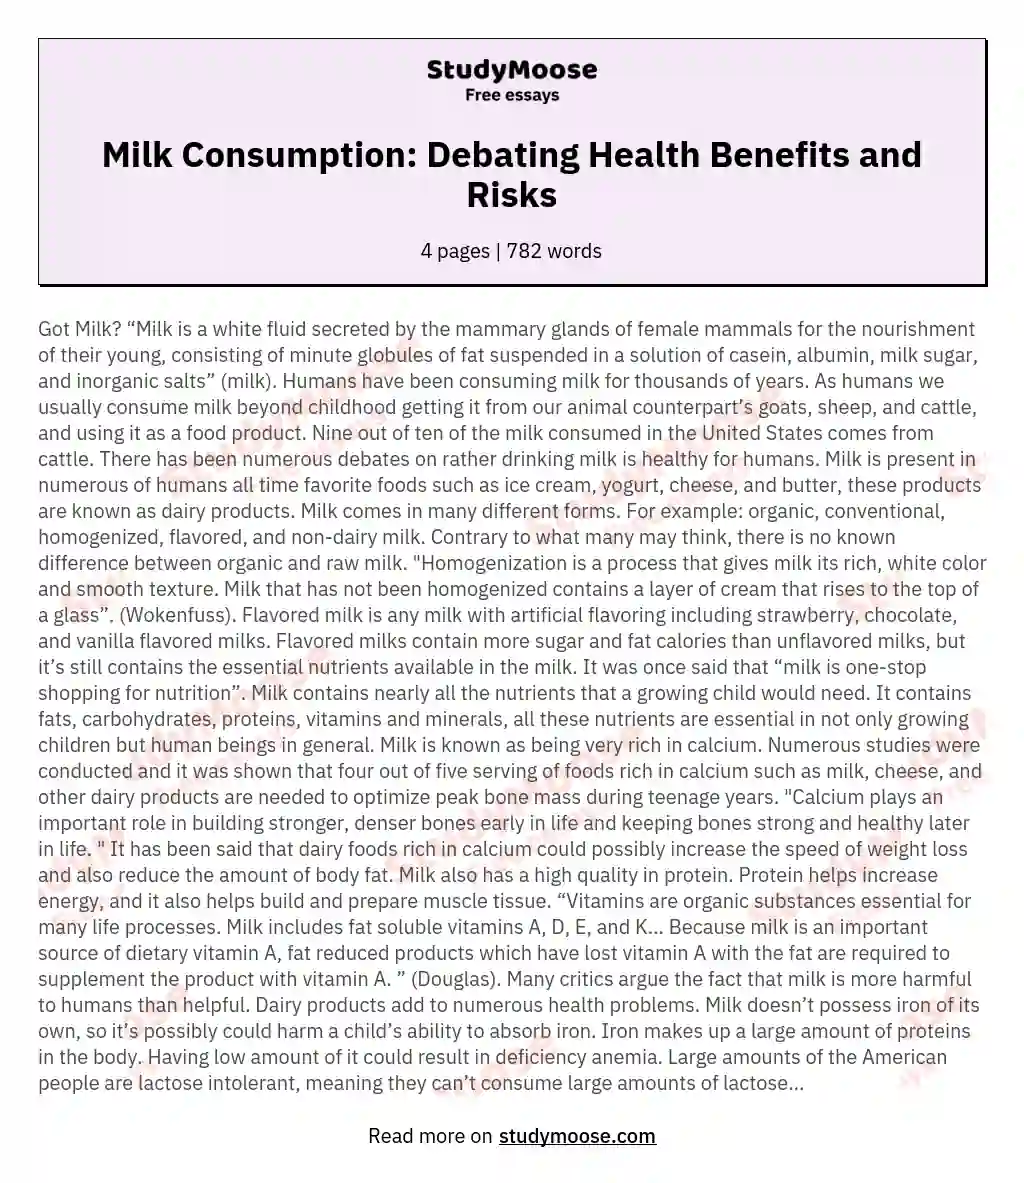 Milk Consumption: Debating Health Benefits and Risks essay